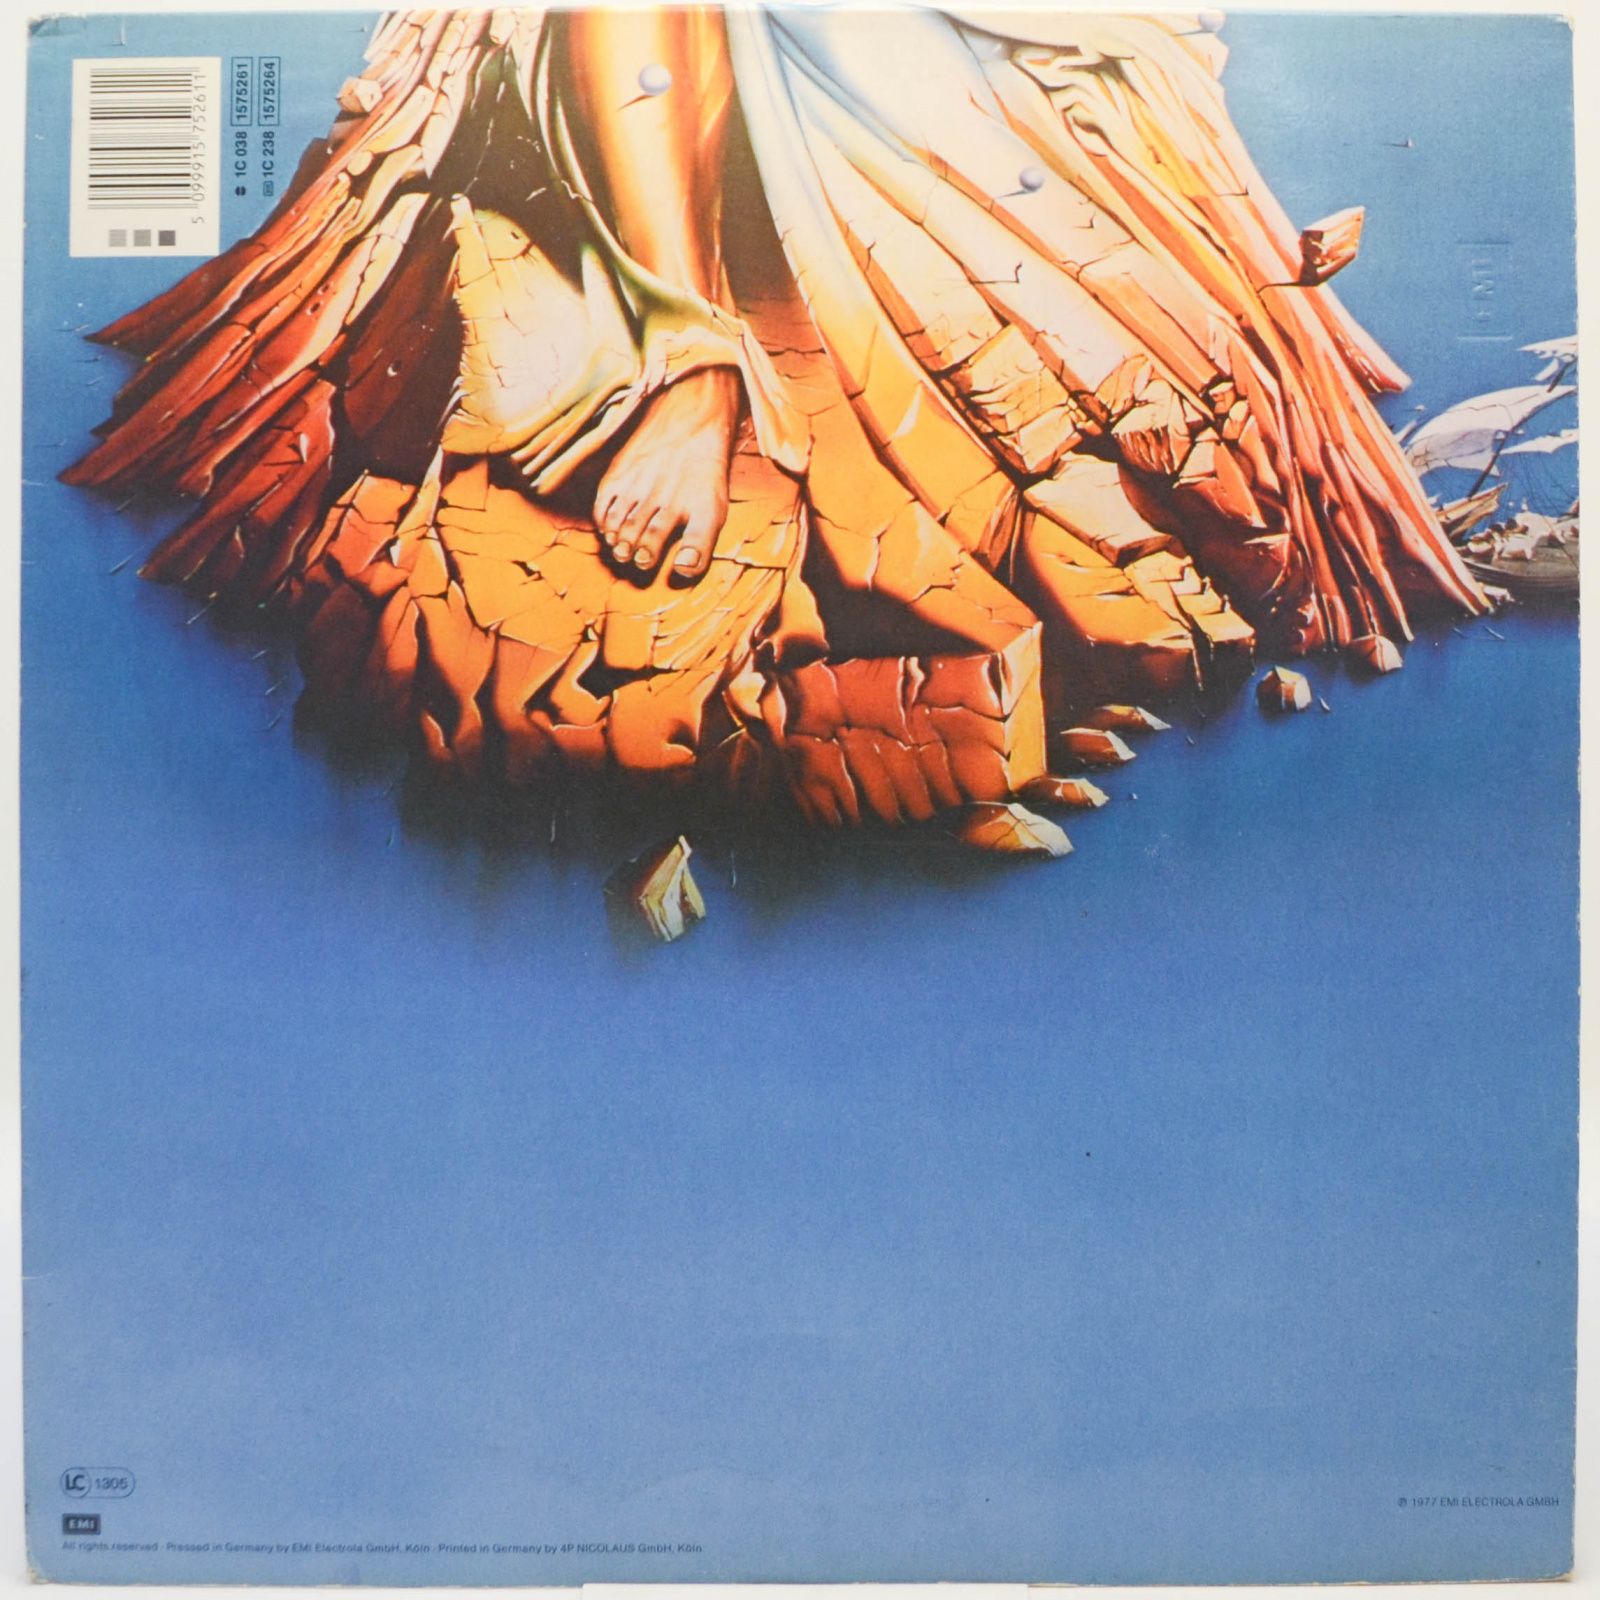 Eloy — Ocean, 1984